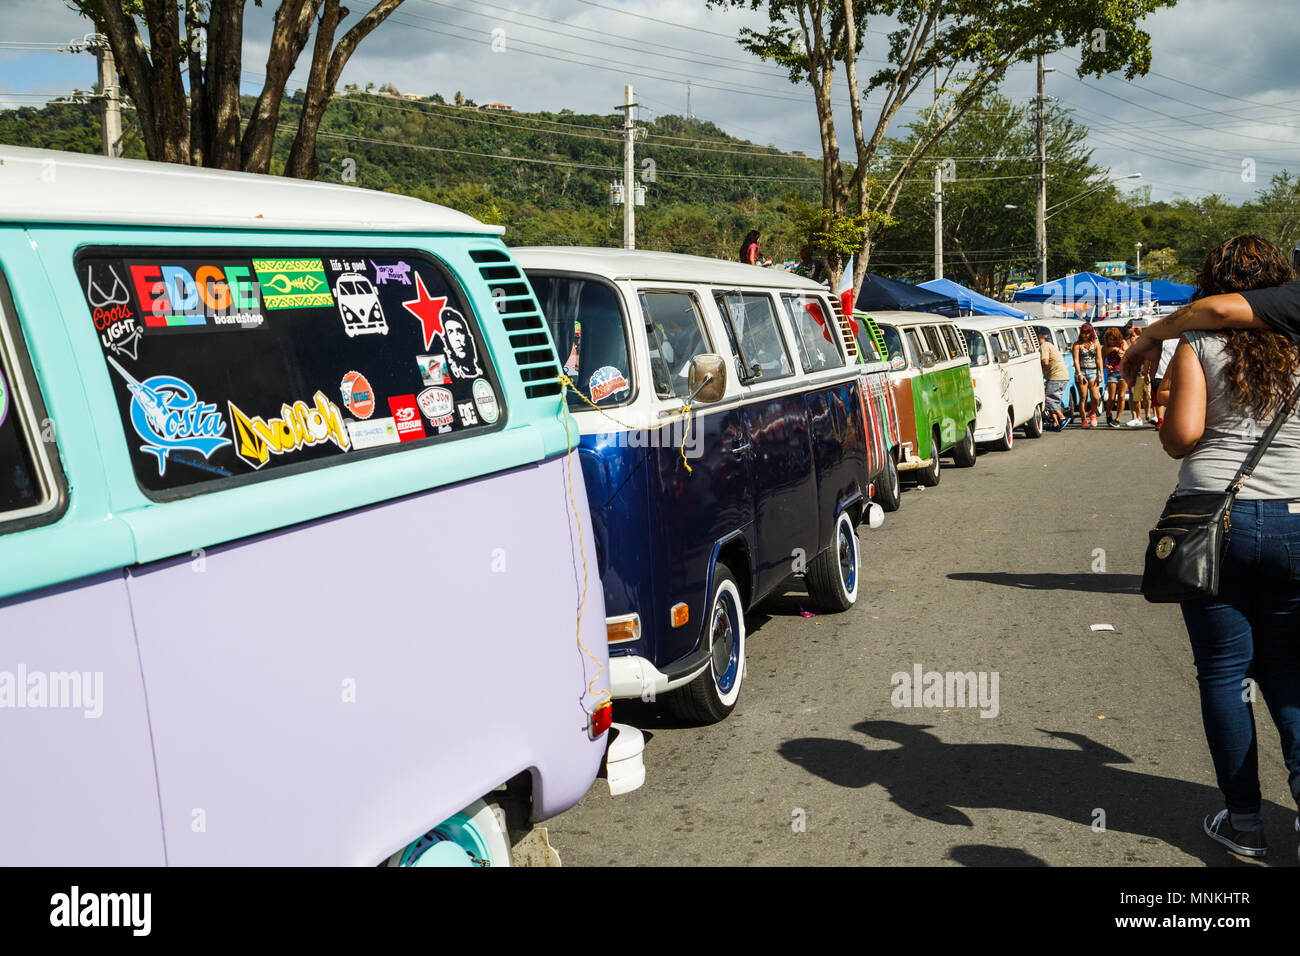 Colorful Volkswagen camper vans are seen for Fiesta de la Novilla in San Sebastián, Puerto Rico. Stock Photo